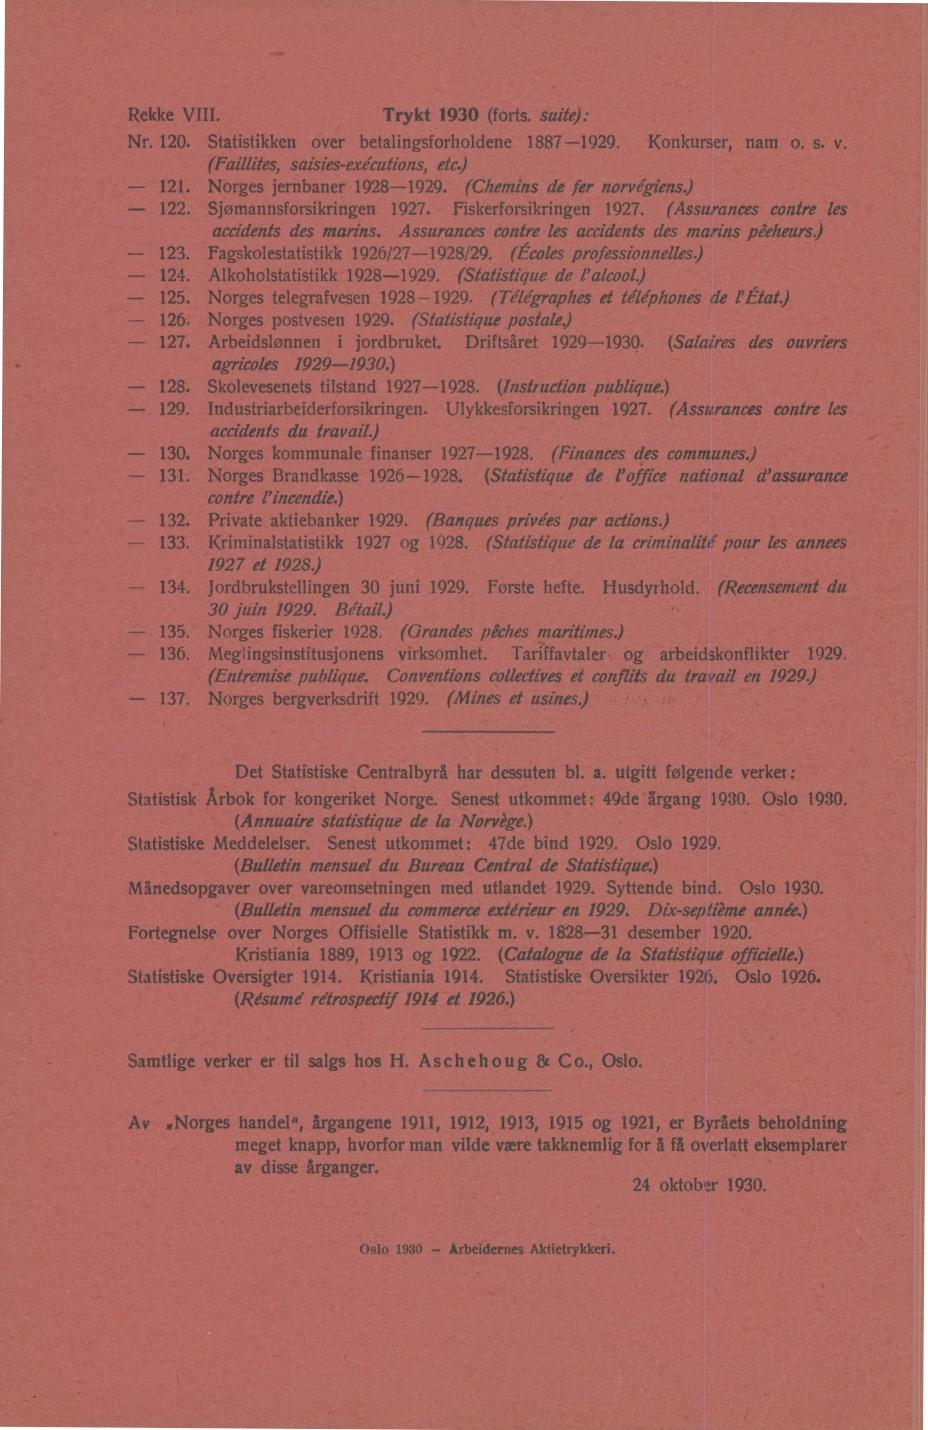 Trykt 1930 (forts. suite): Rekke VIII. Nr. 120. Statistikken over betalingsforholdene 1887-1929. - - Konkurser, nam o. s. v. (Faillites, saisies-exécutions, etc.) 121. Norges jernbaner 1928-1929.